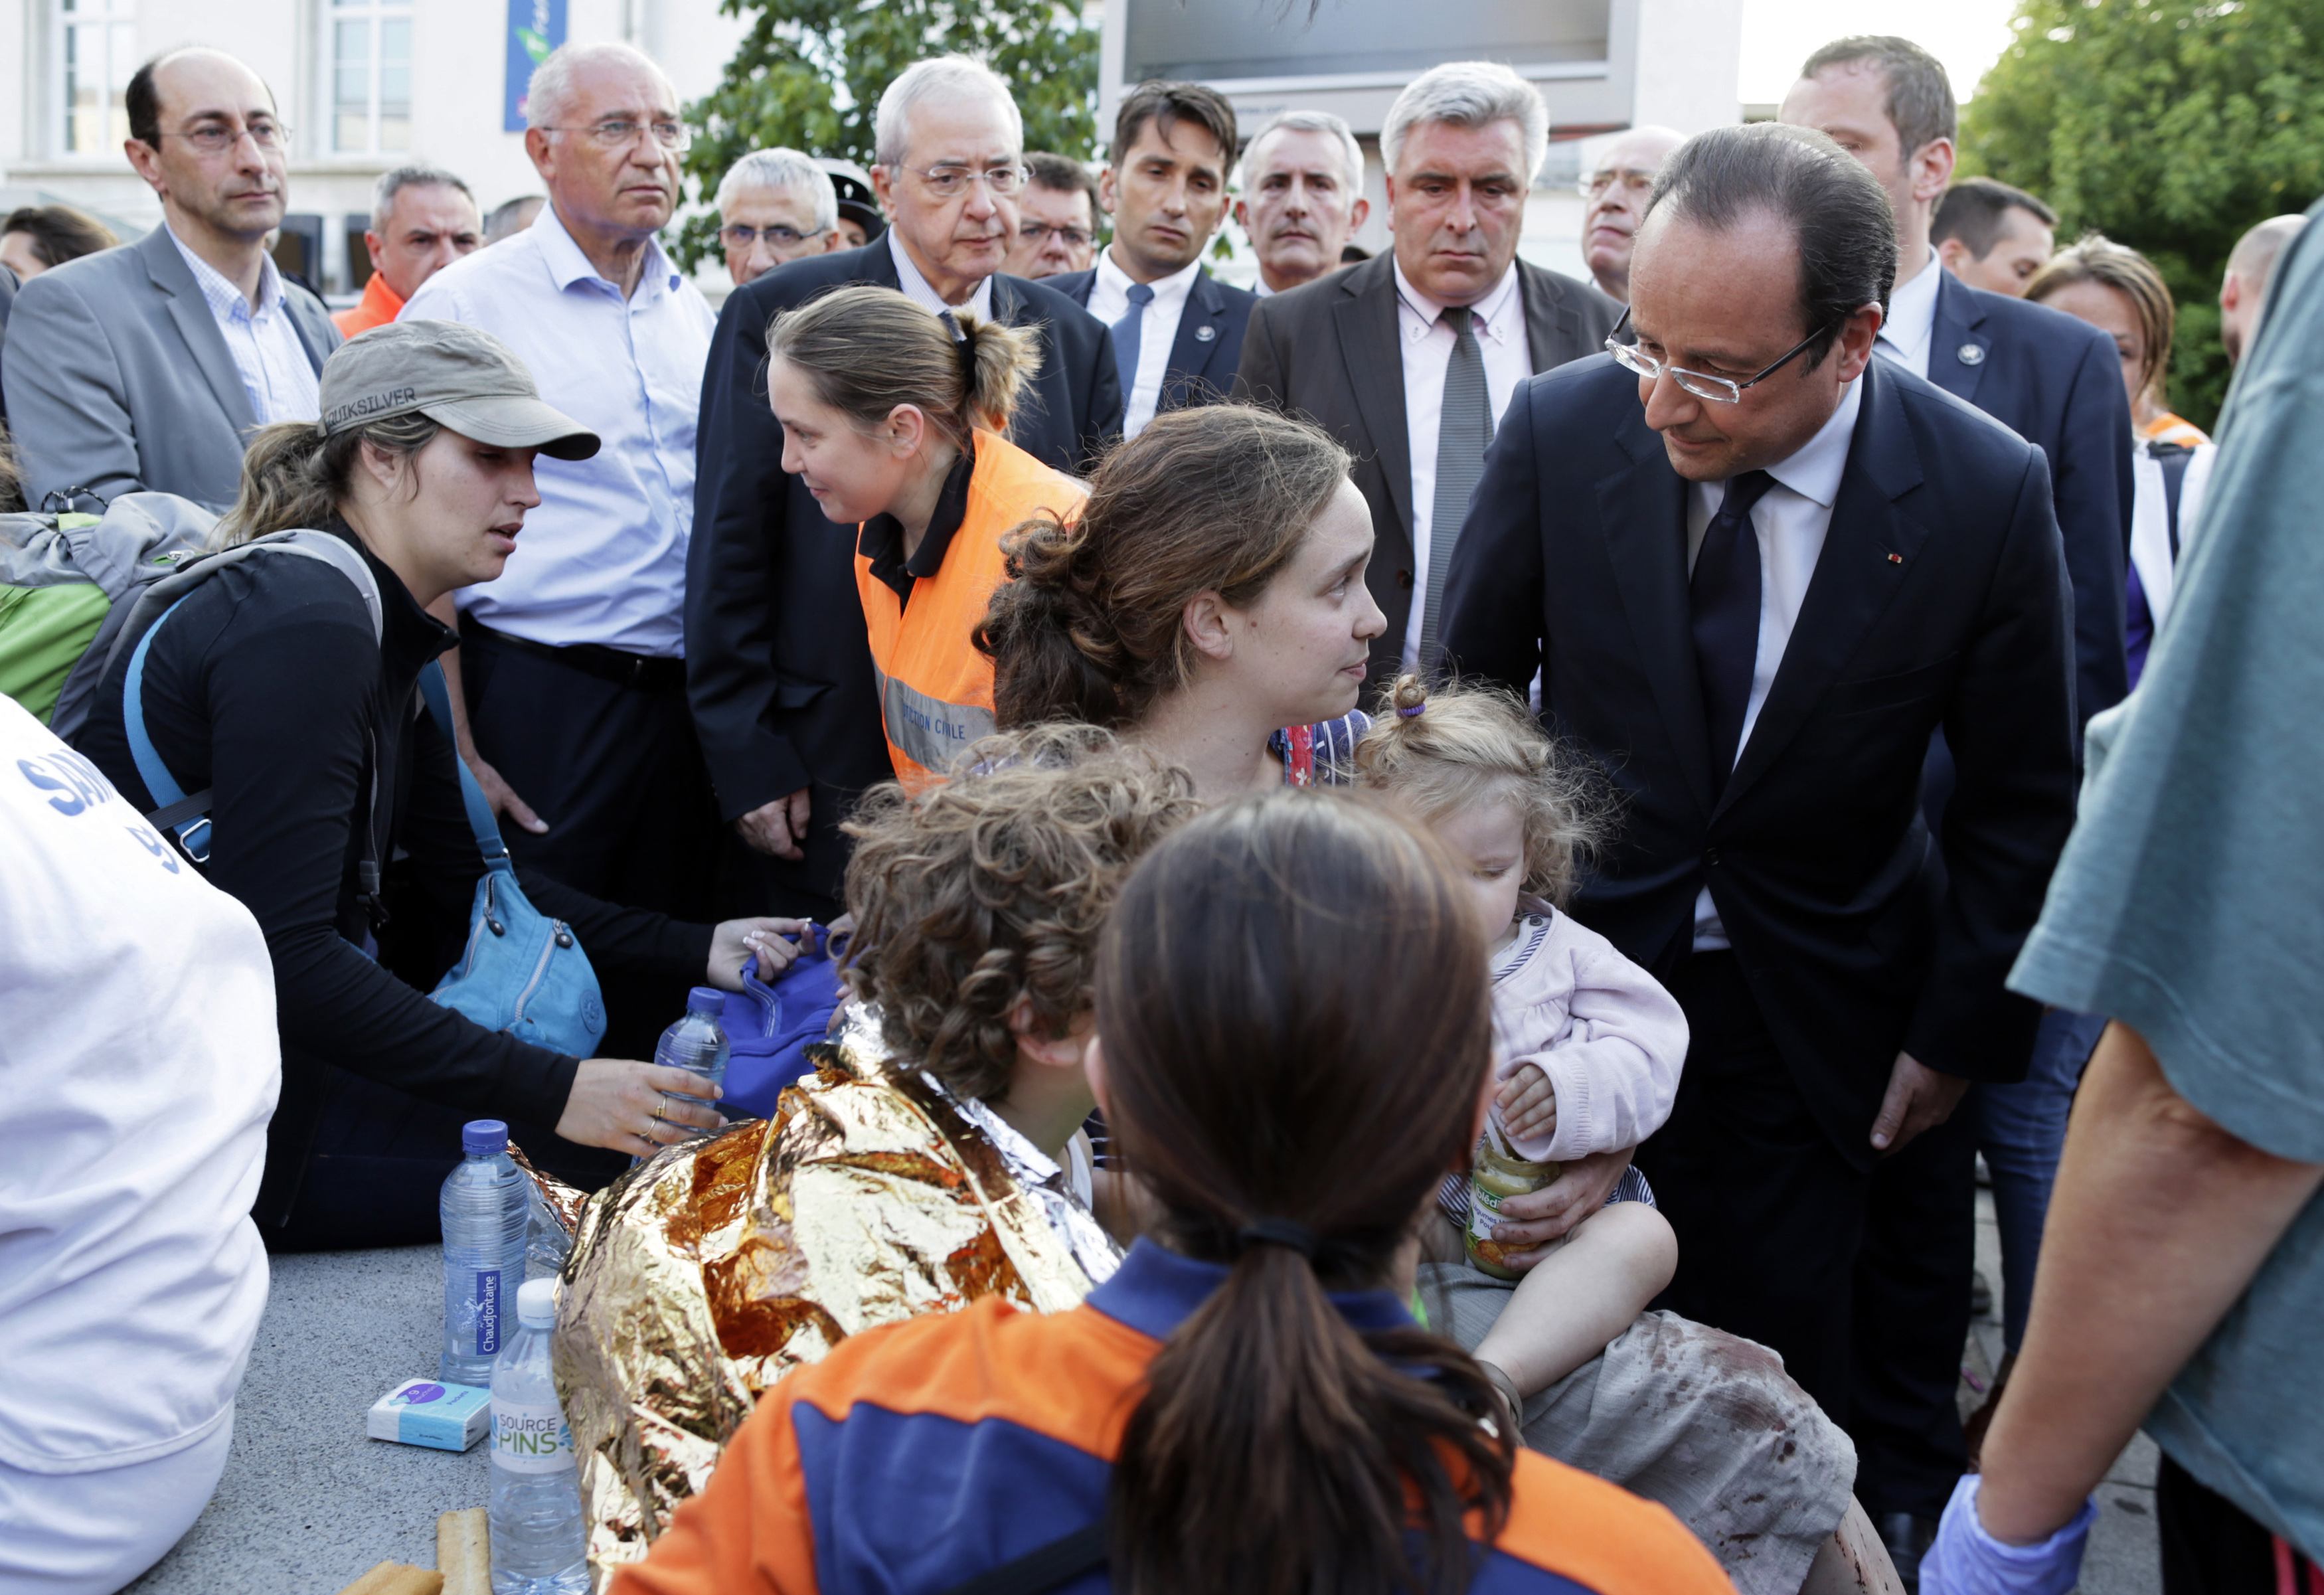 Σοκαρισμένος με την τραγωδία δήλωσε ο Φρανσουά Ολάντ ΦΩΤΟ REUTERS